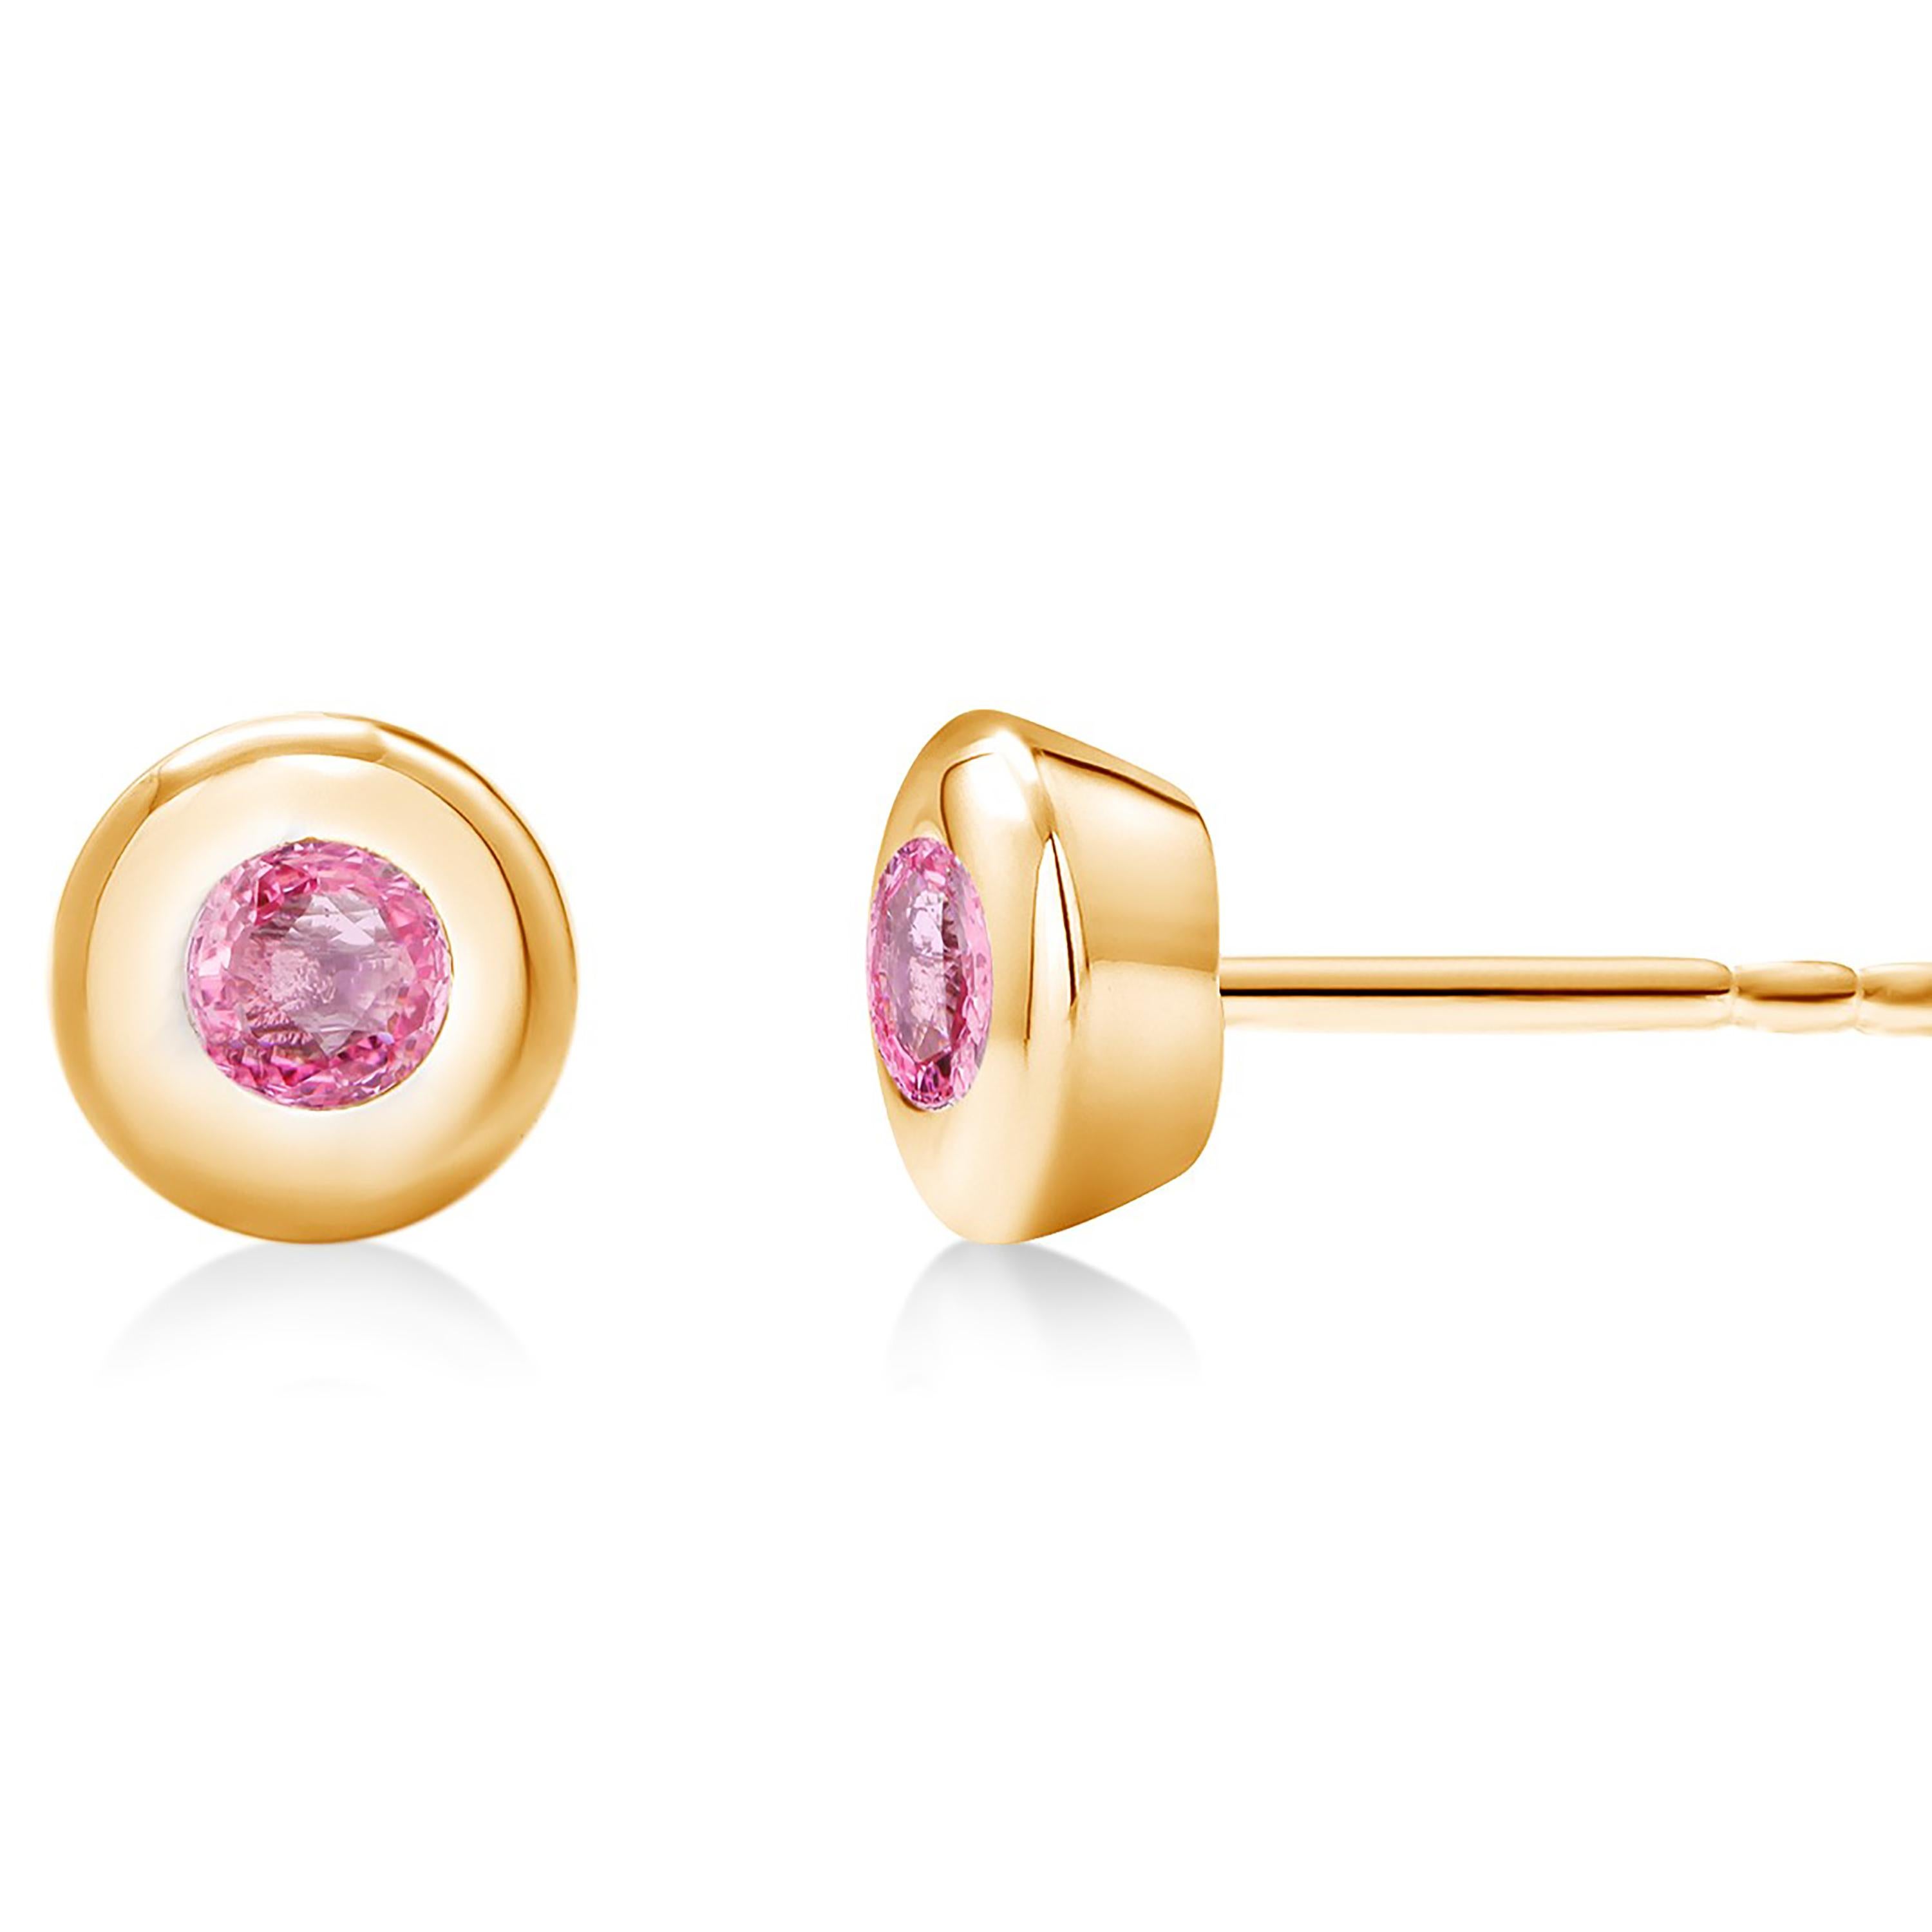 Contemporary 14 Karat Yellow Gold Bezel Set Pink Sapphire Stud Earrings Weighing 0.30 Carat